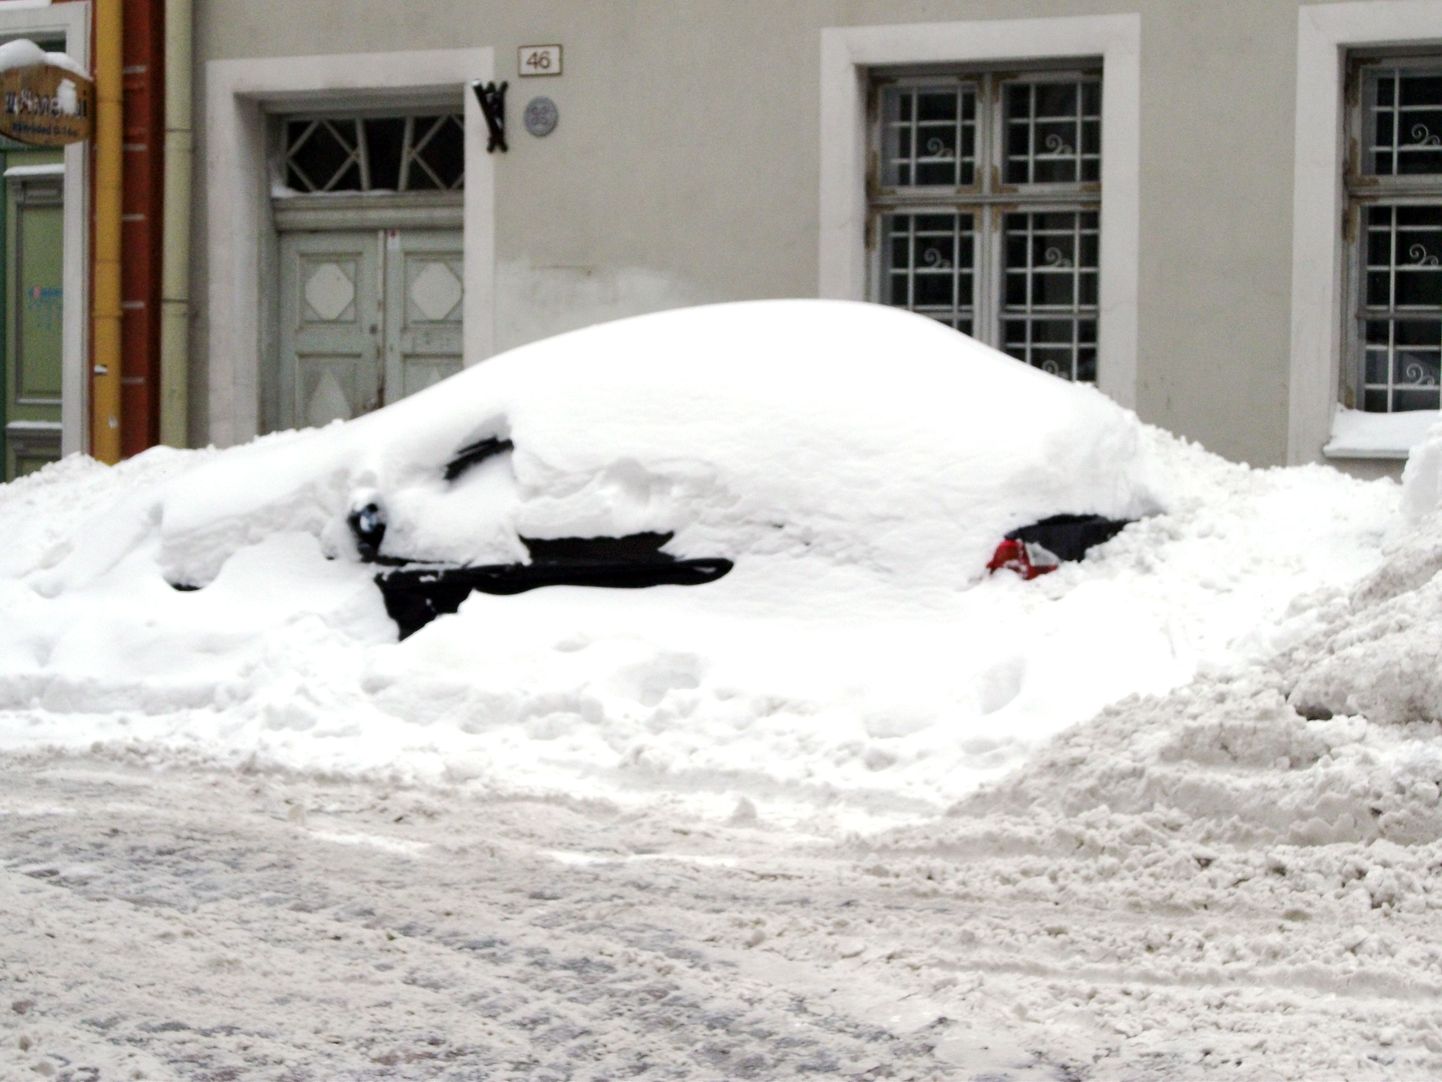 Lume alla mattunud auto Pikal tänaval.